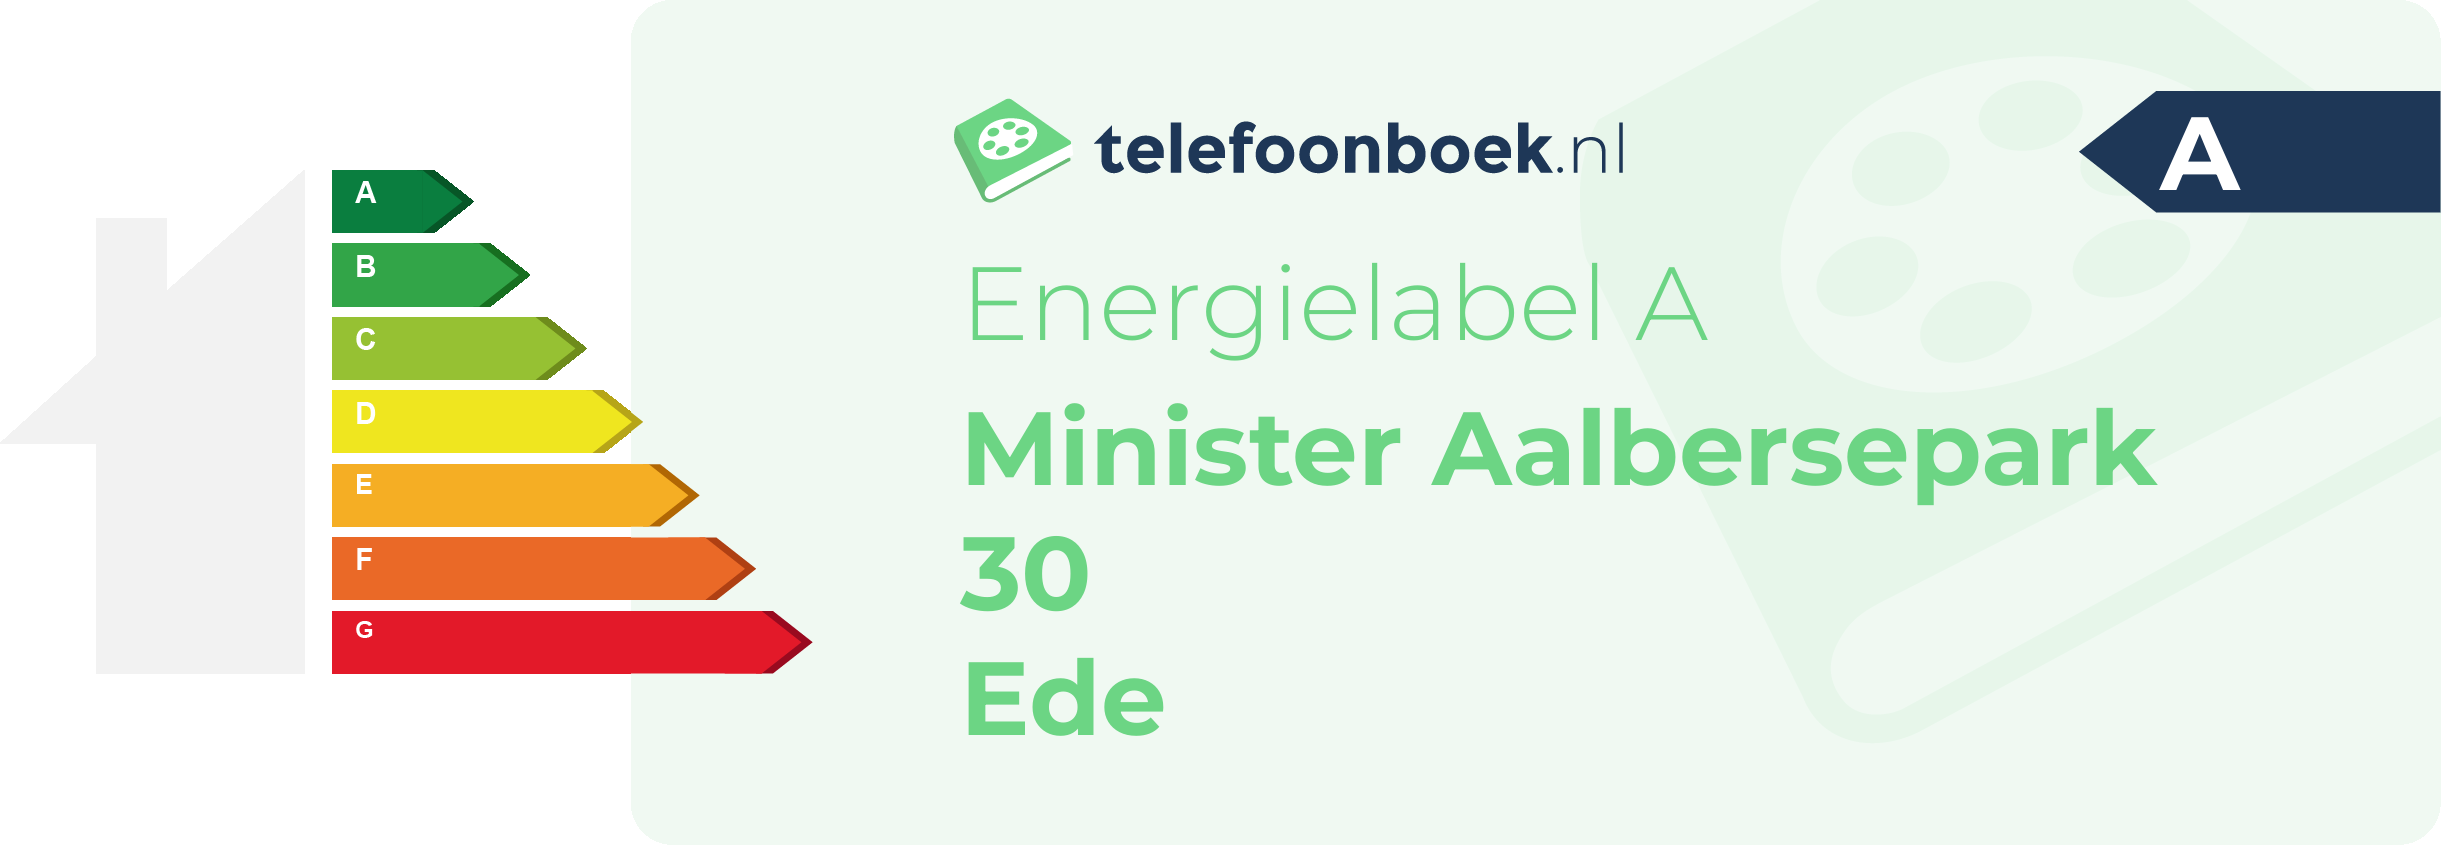 Energielabel Minister Aalbersepark 30 Ede